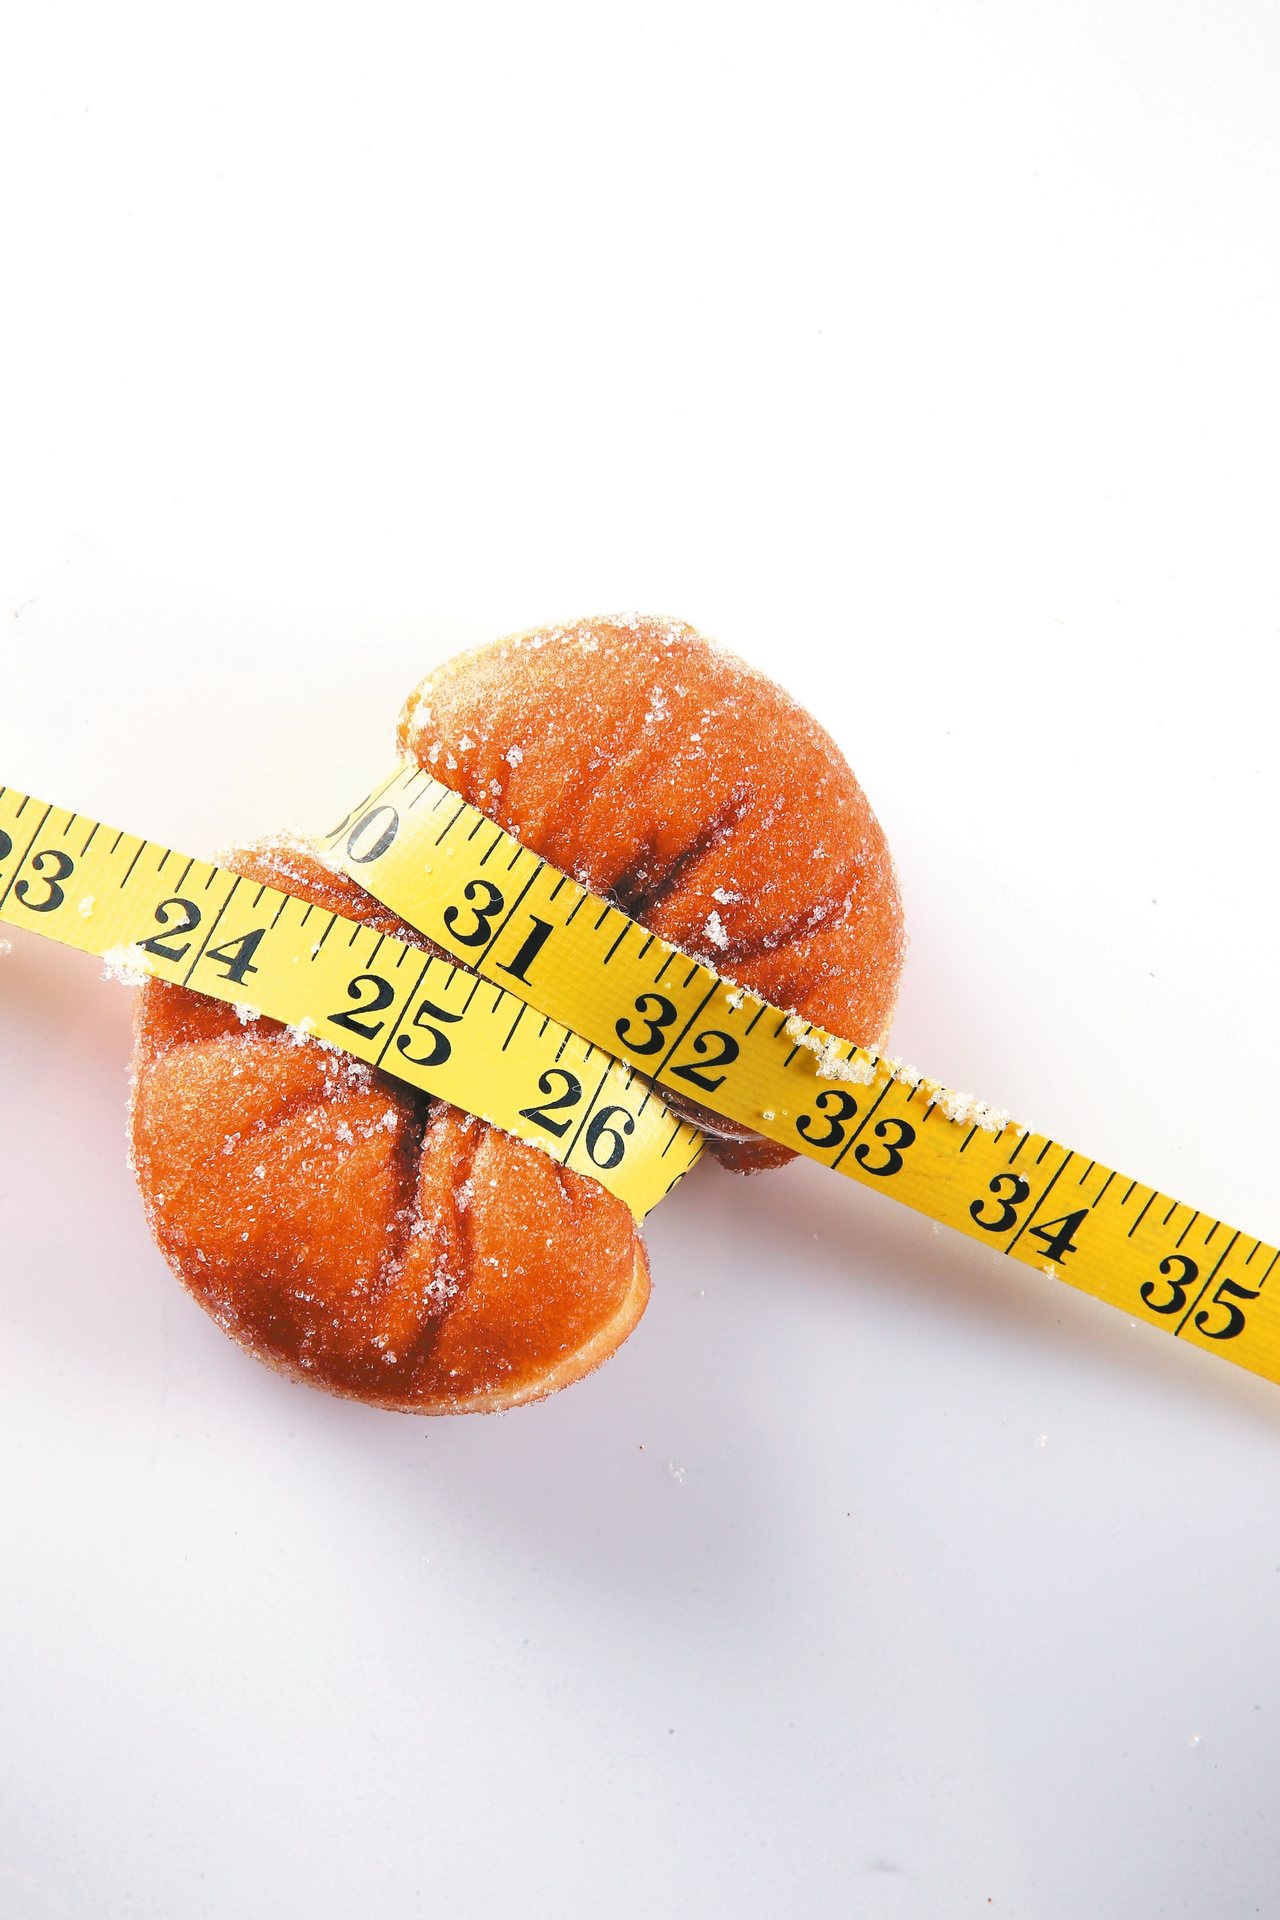 飲食控制搭配有氧運動雖能有效減重。